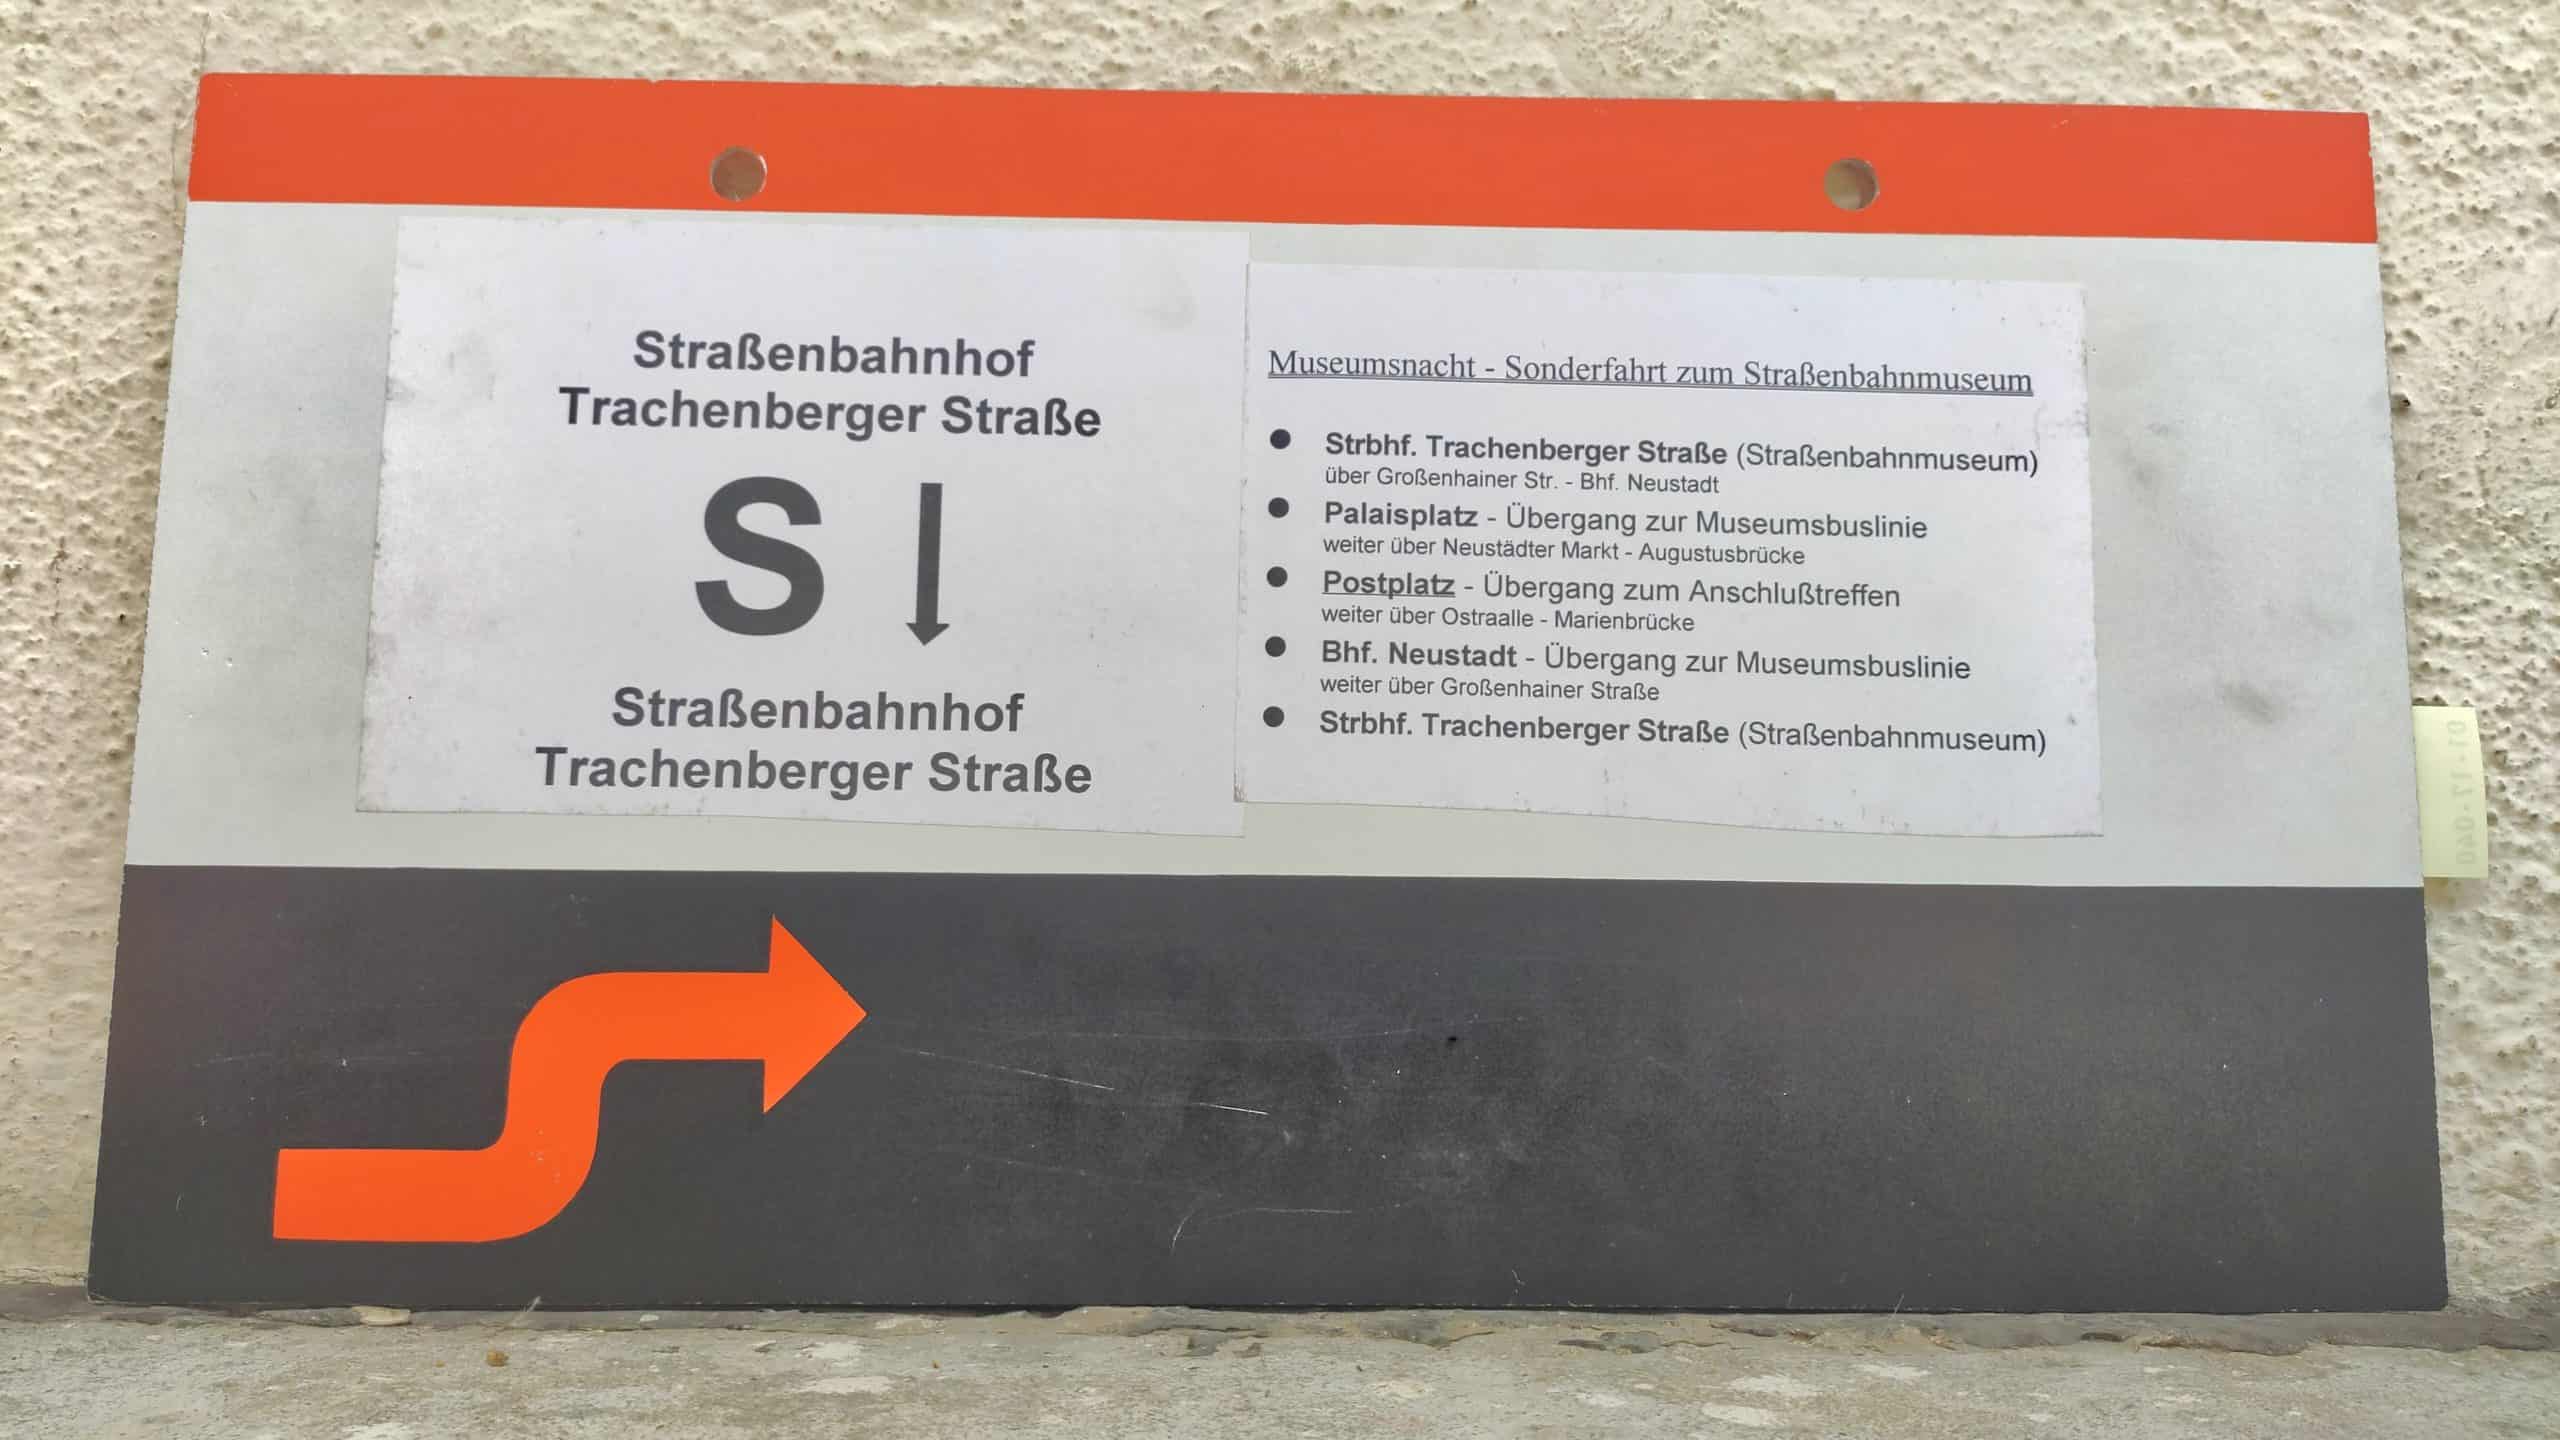 S Museumsnacht – Sonderfahrt zum Straßenbahnmuseum Strbhf. Trachenberger Straße (Straßenbahnmuseum) – Strbhf. Trachenberger Straße (Straßenbahnmuseum) #2